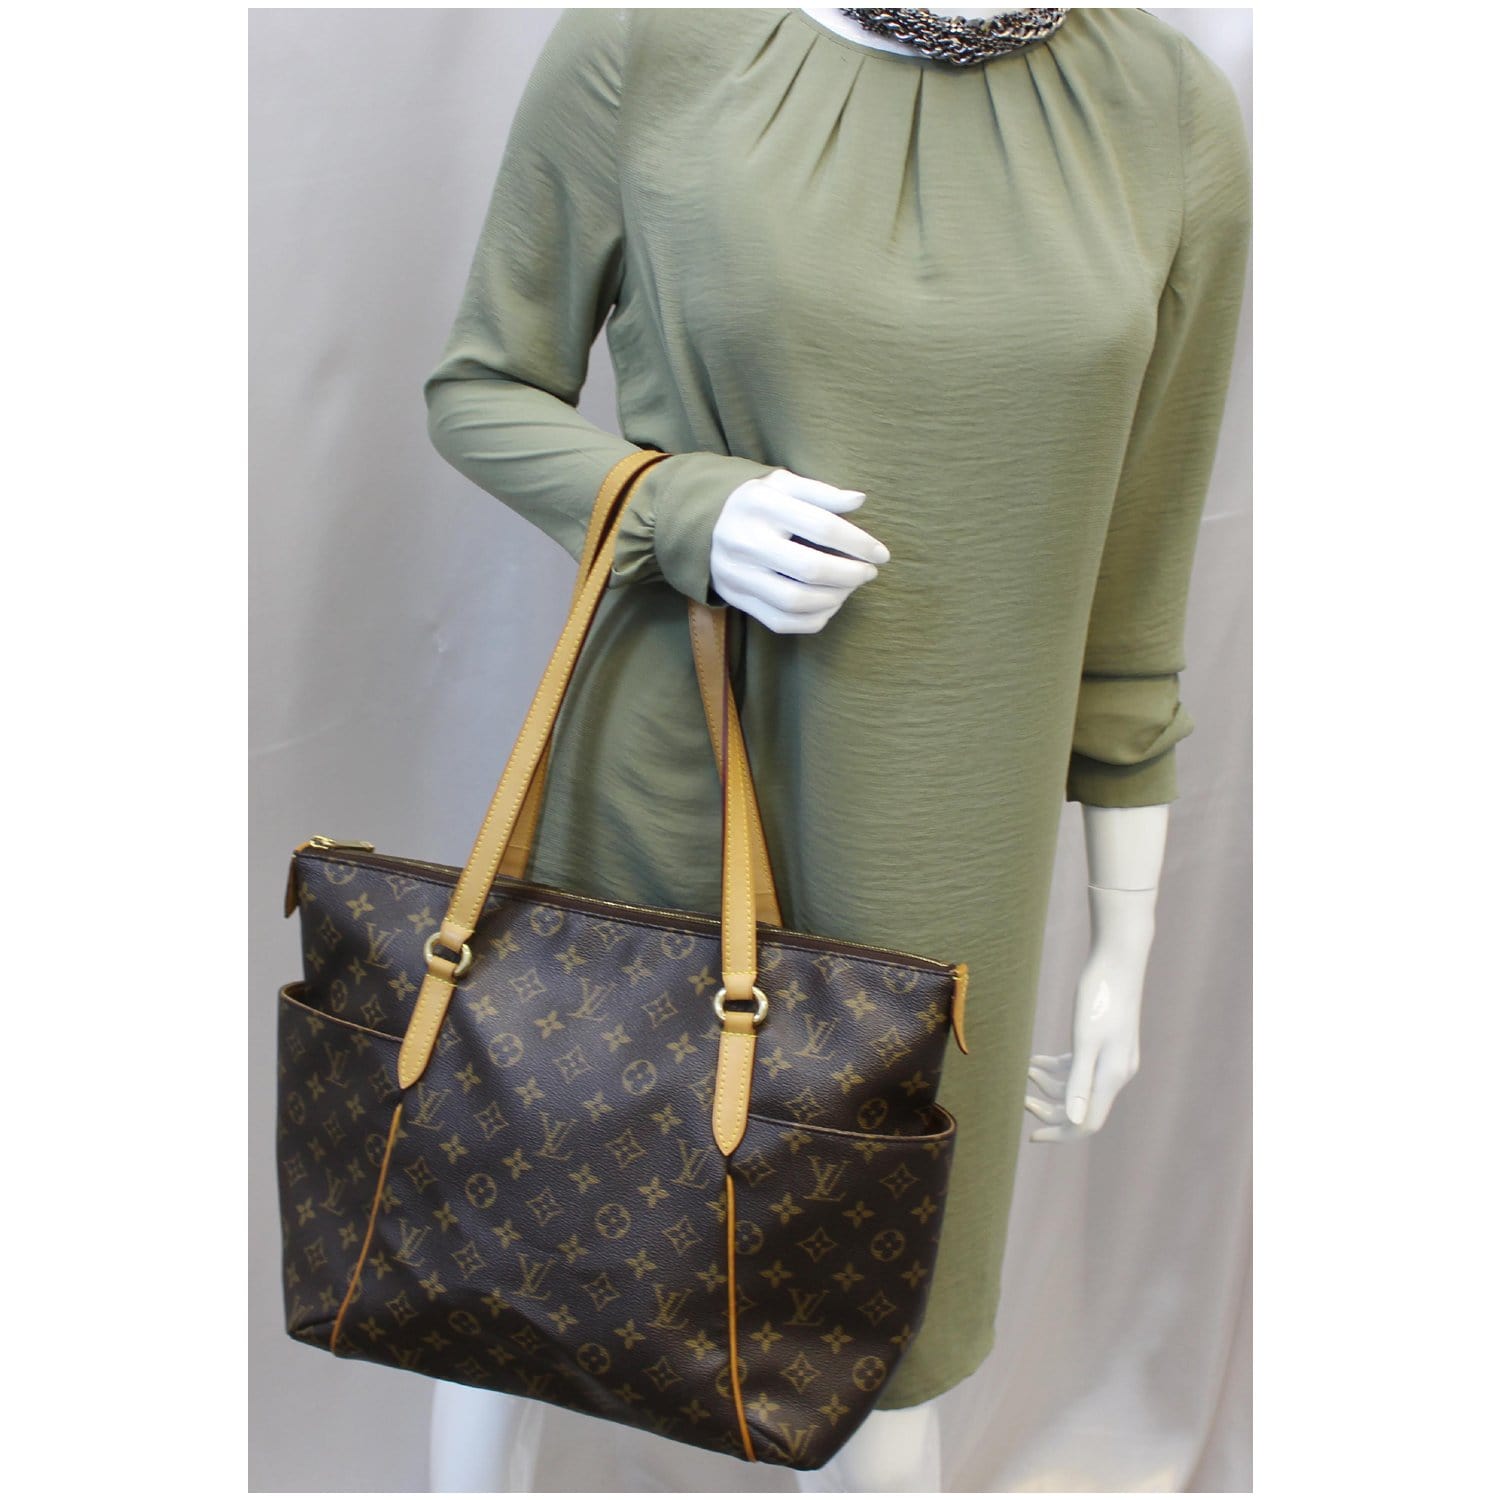 My Entire LV Louis Vuitton Bag & Purse Collection 2021 😍 BEST